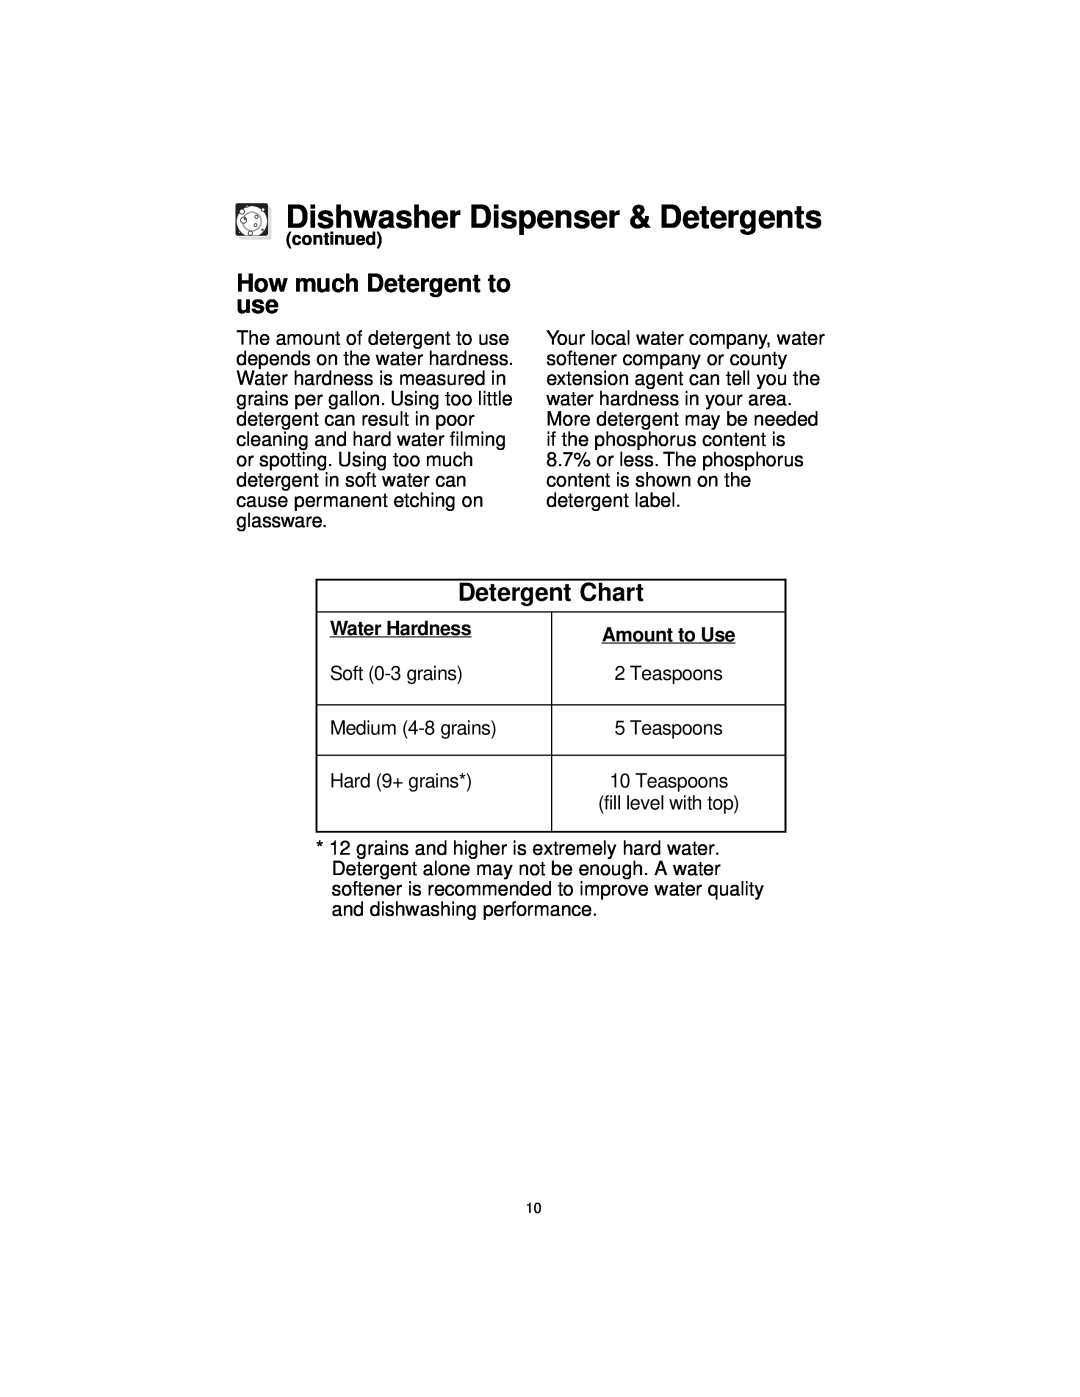 Frigidaire MDB110 MDB125 How much Detergent to use, Detergent Chart, Dishwasher Dispenser & Detergents, Water Hardness 